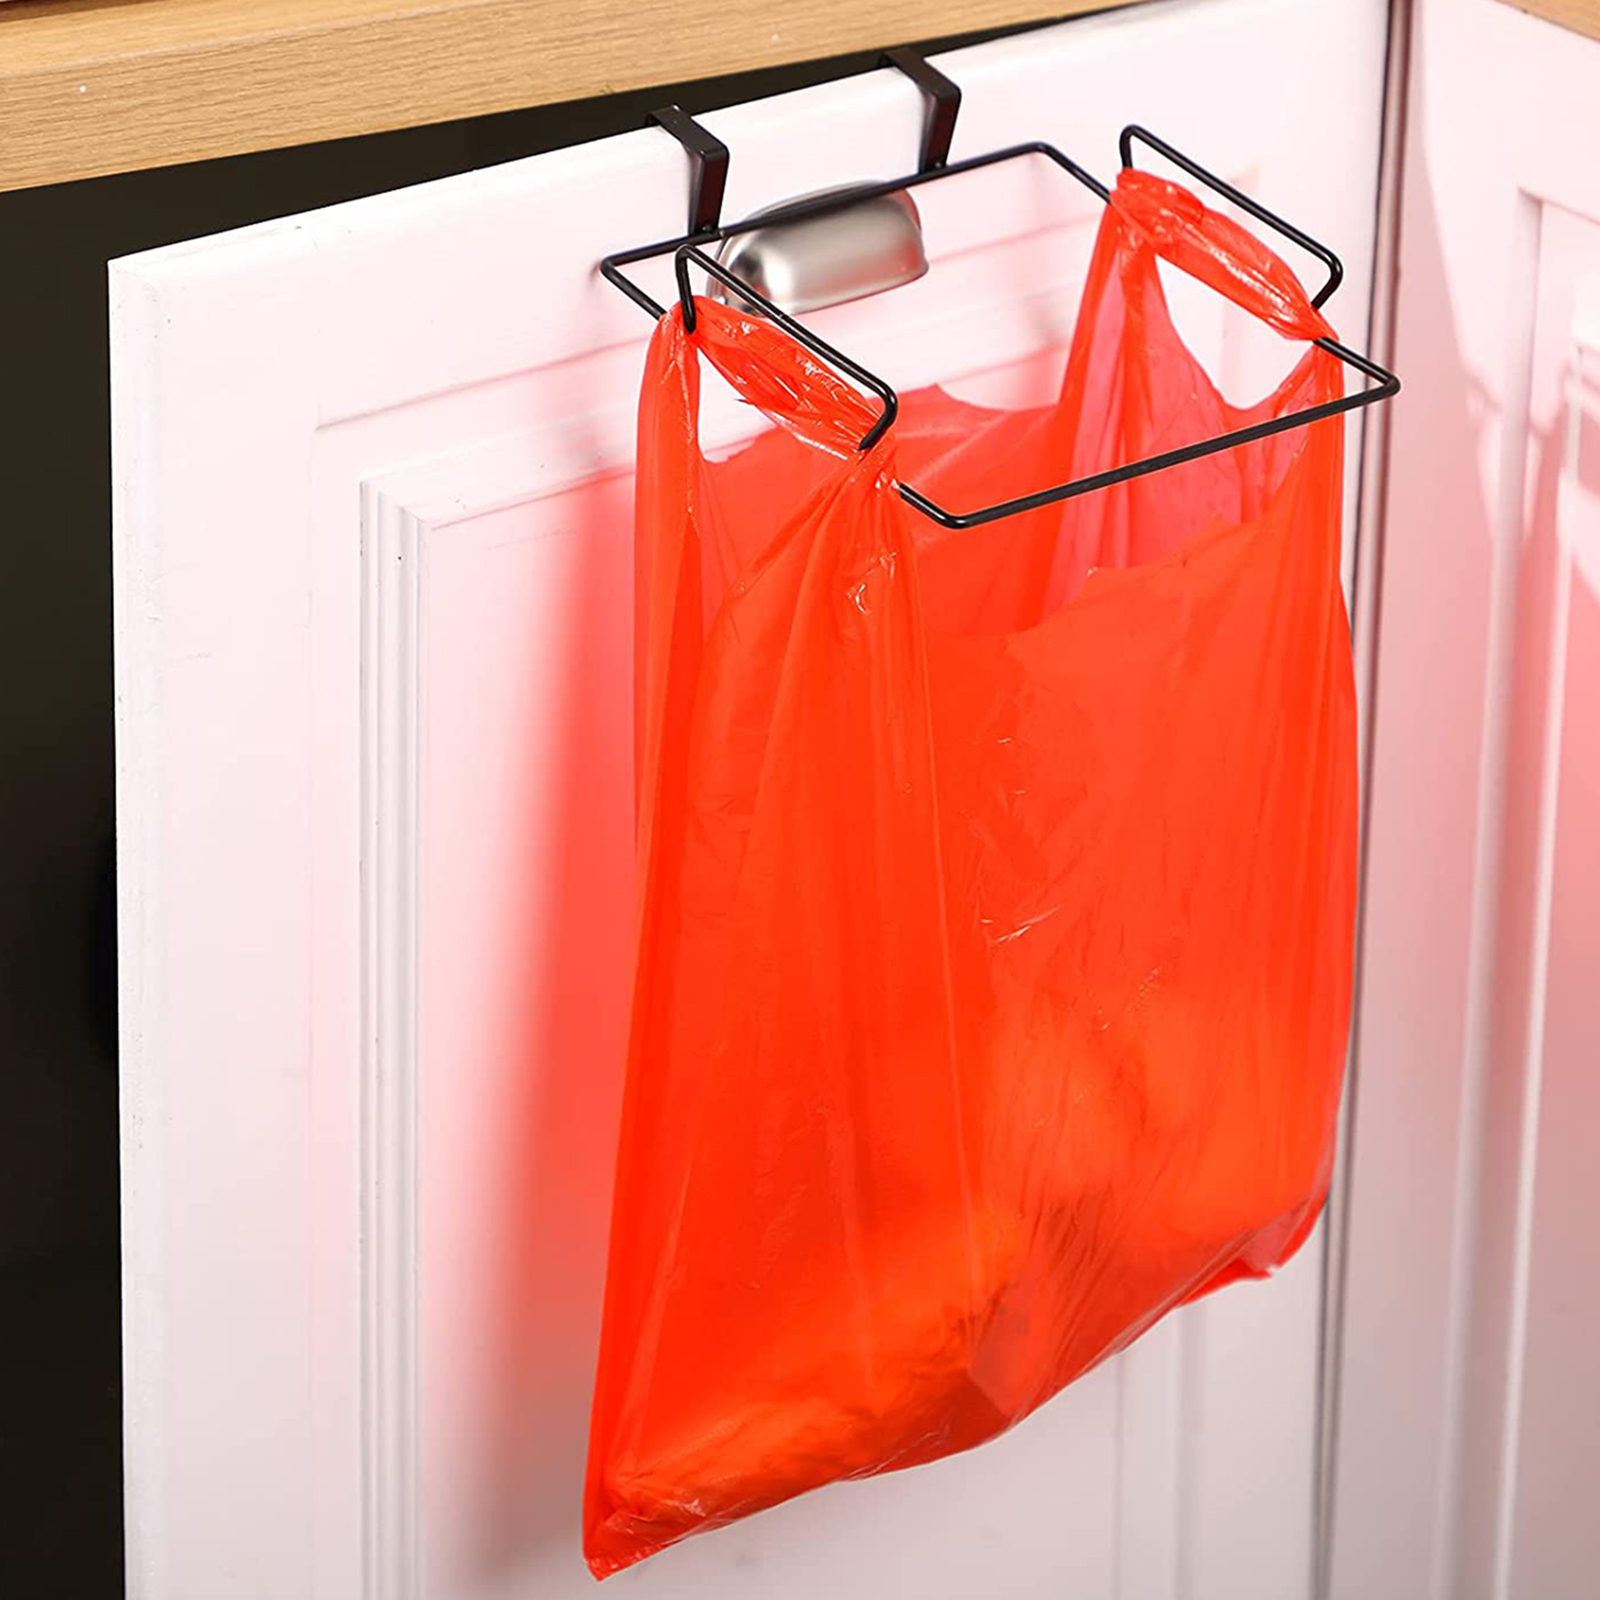 SHOPANTS Kitchen Accessories Hanging Cabinet Plastic Bag Holder Small Metal Plastic Bag Holder Practical Sturdy Under Counter Over Door Waste Bag Holder Shelf 